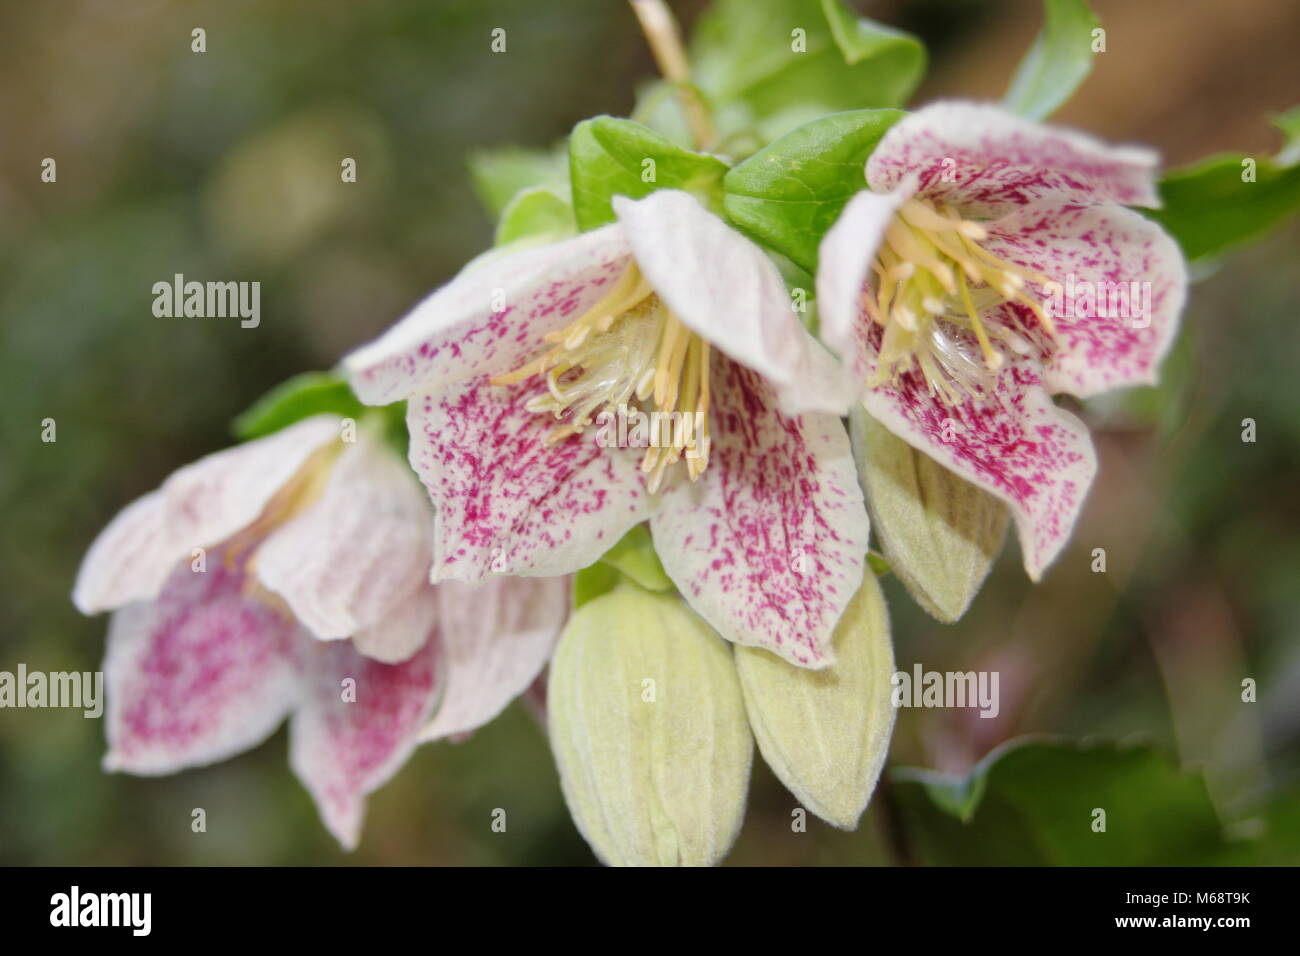 Clematis cirrhosa purpurascens 'Freckles', evergreen, winter flowering climber, UK garden Stock Photo